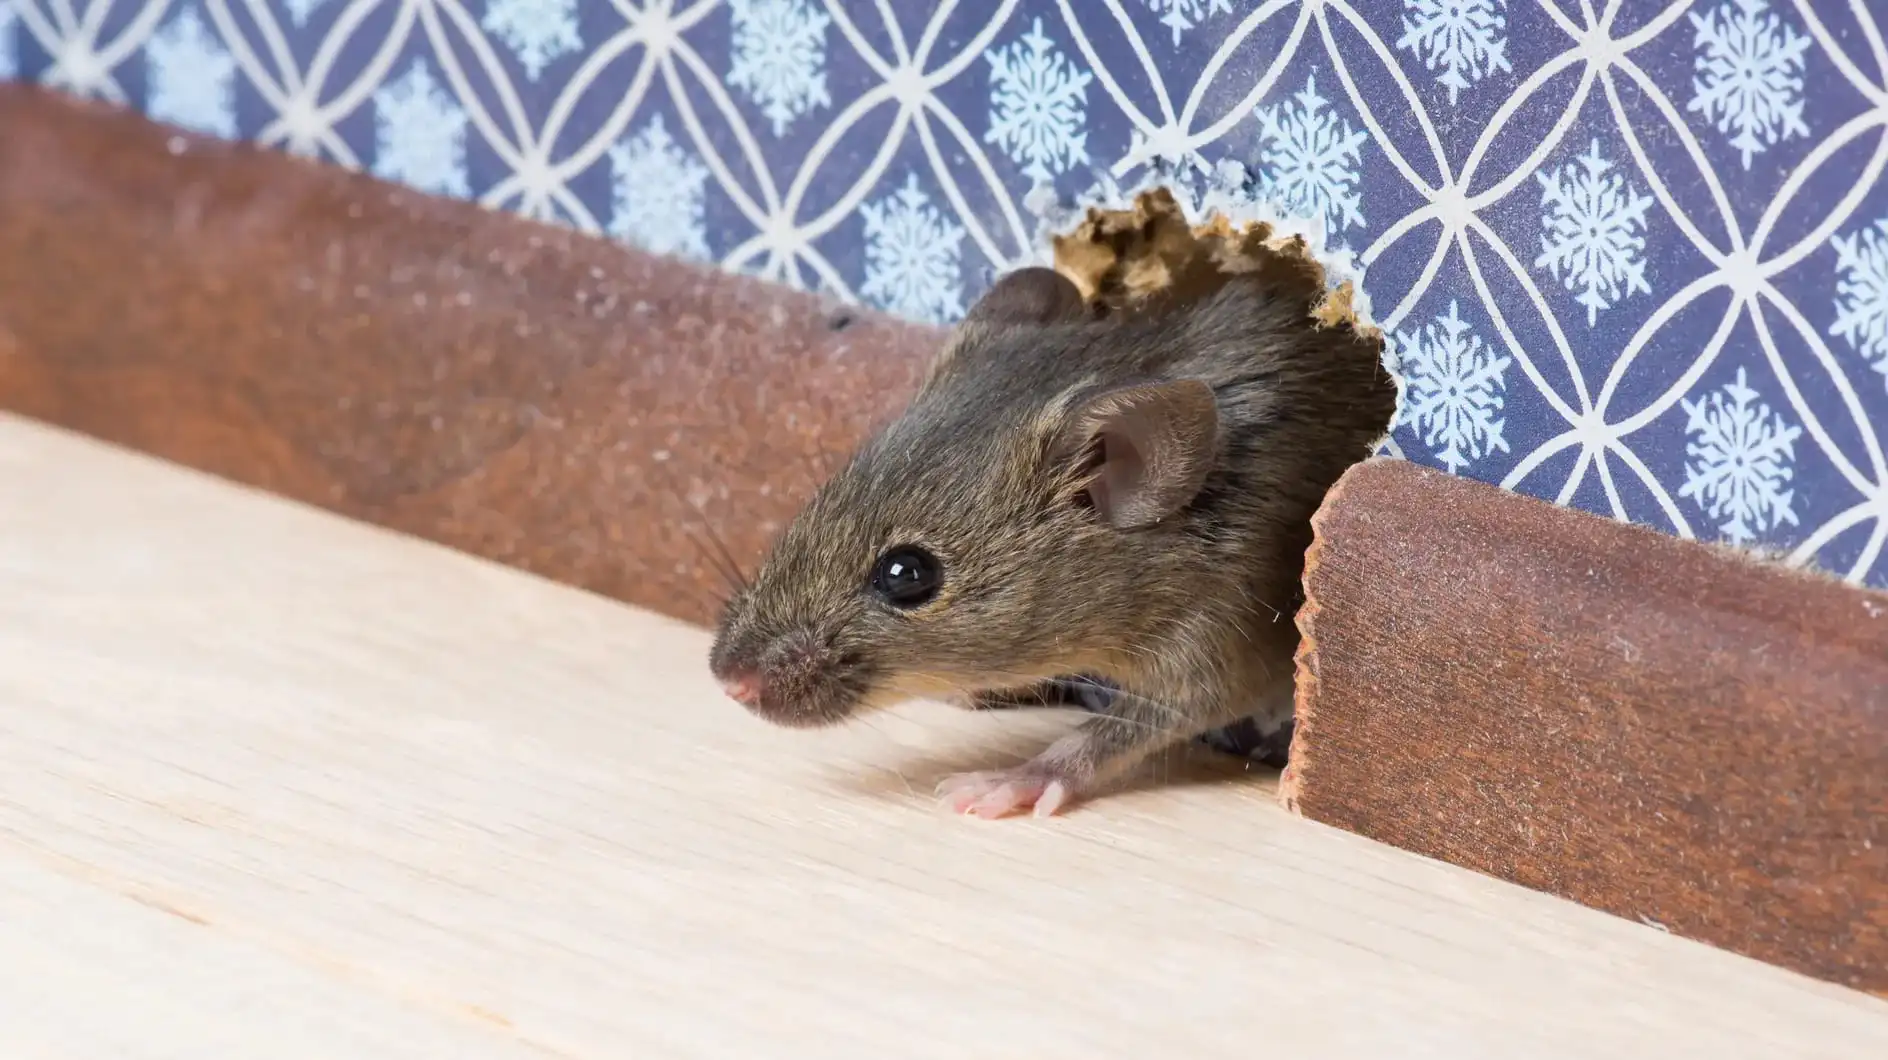 Attrape souris trip trap  Piegez les souris sans les tuer